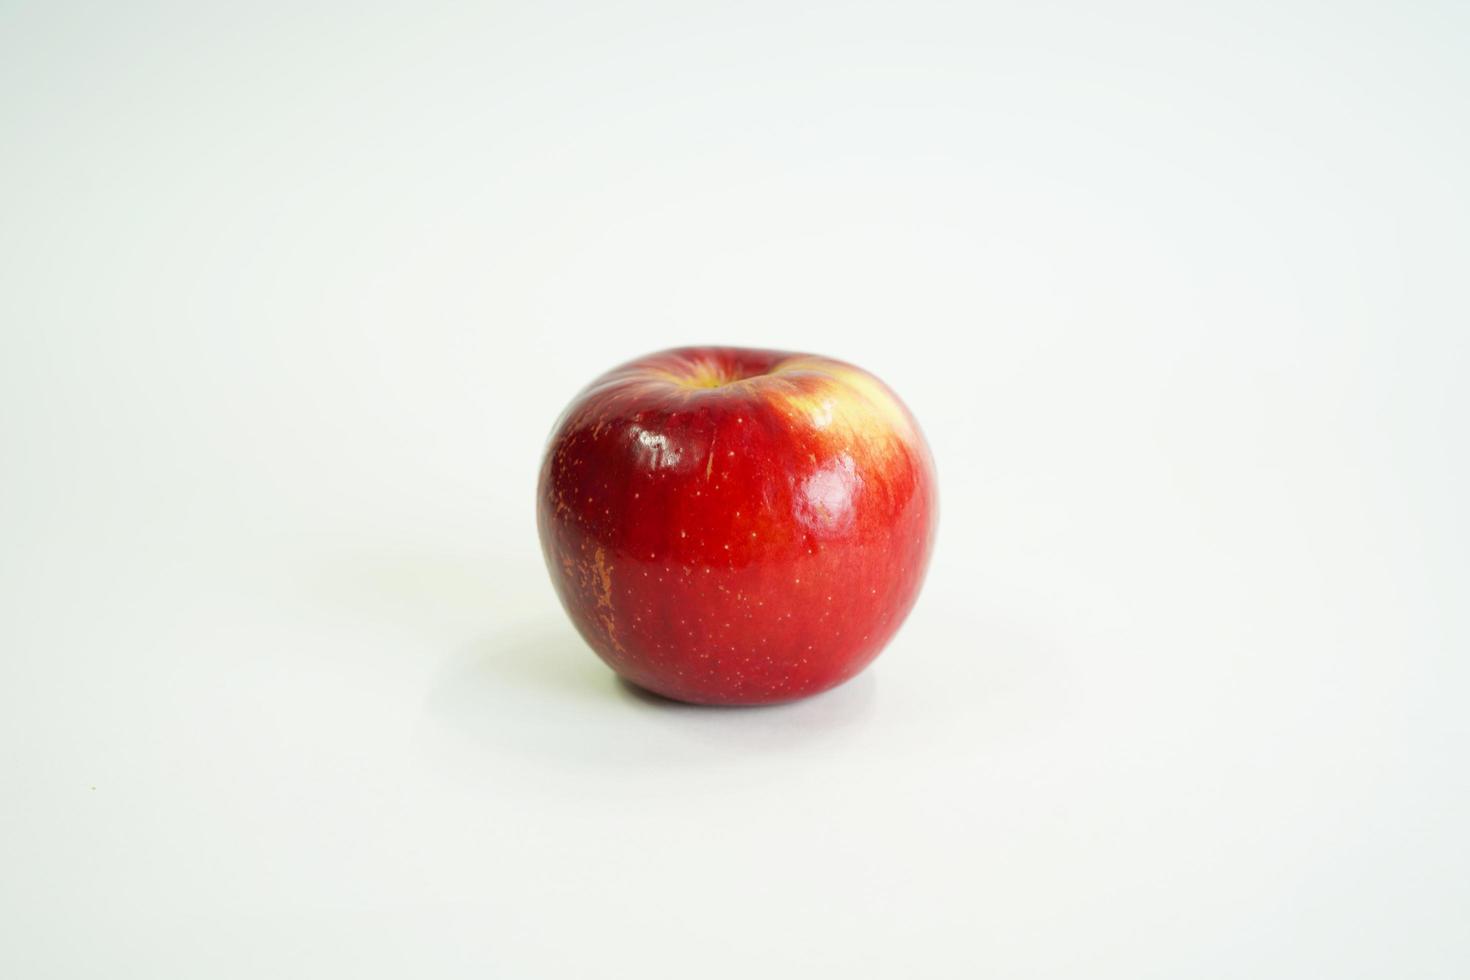 mela rossa fresca. frutta e verdura biologica foto